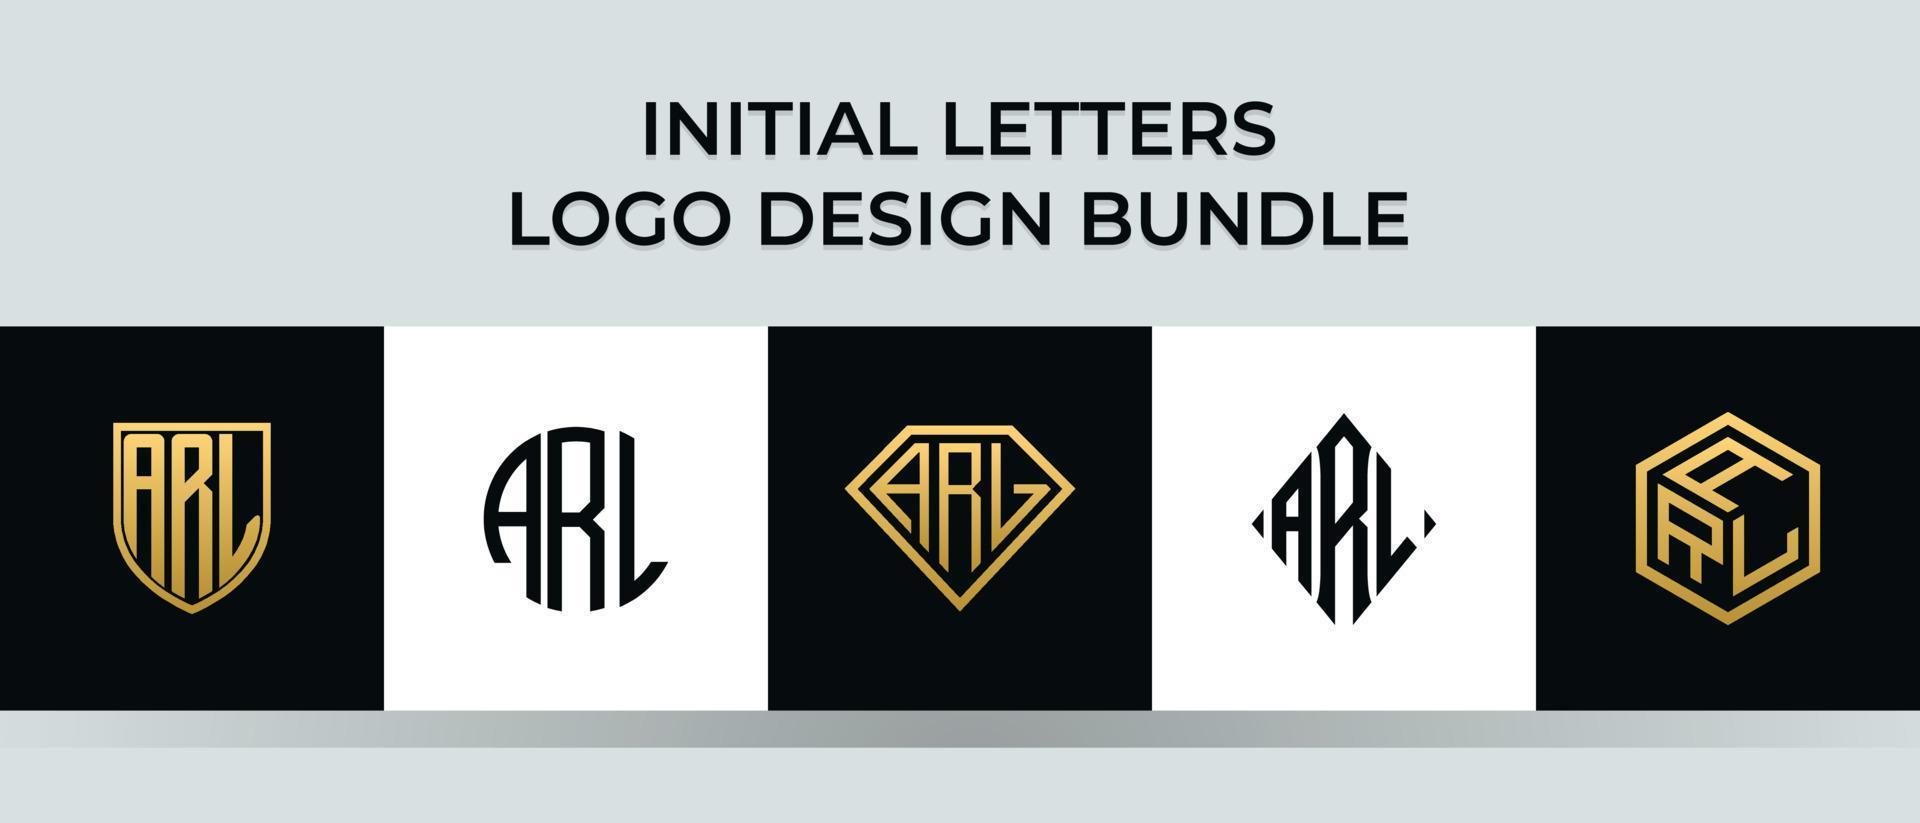 lettere iniziali arl logo design bundle vettore